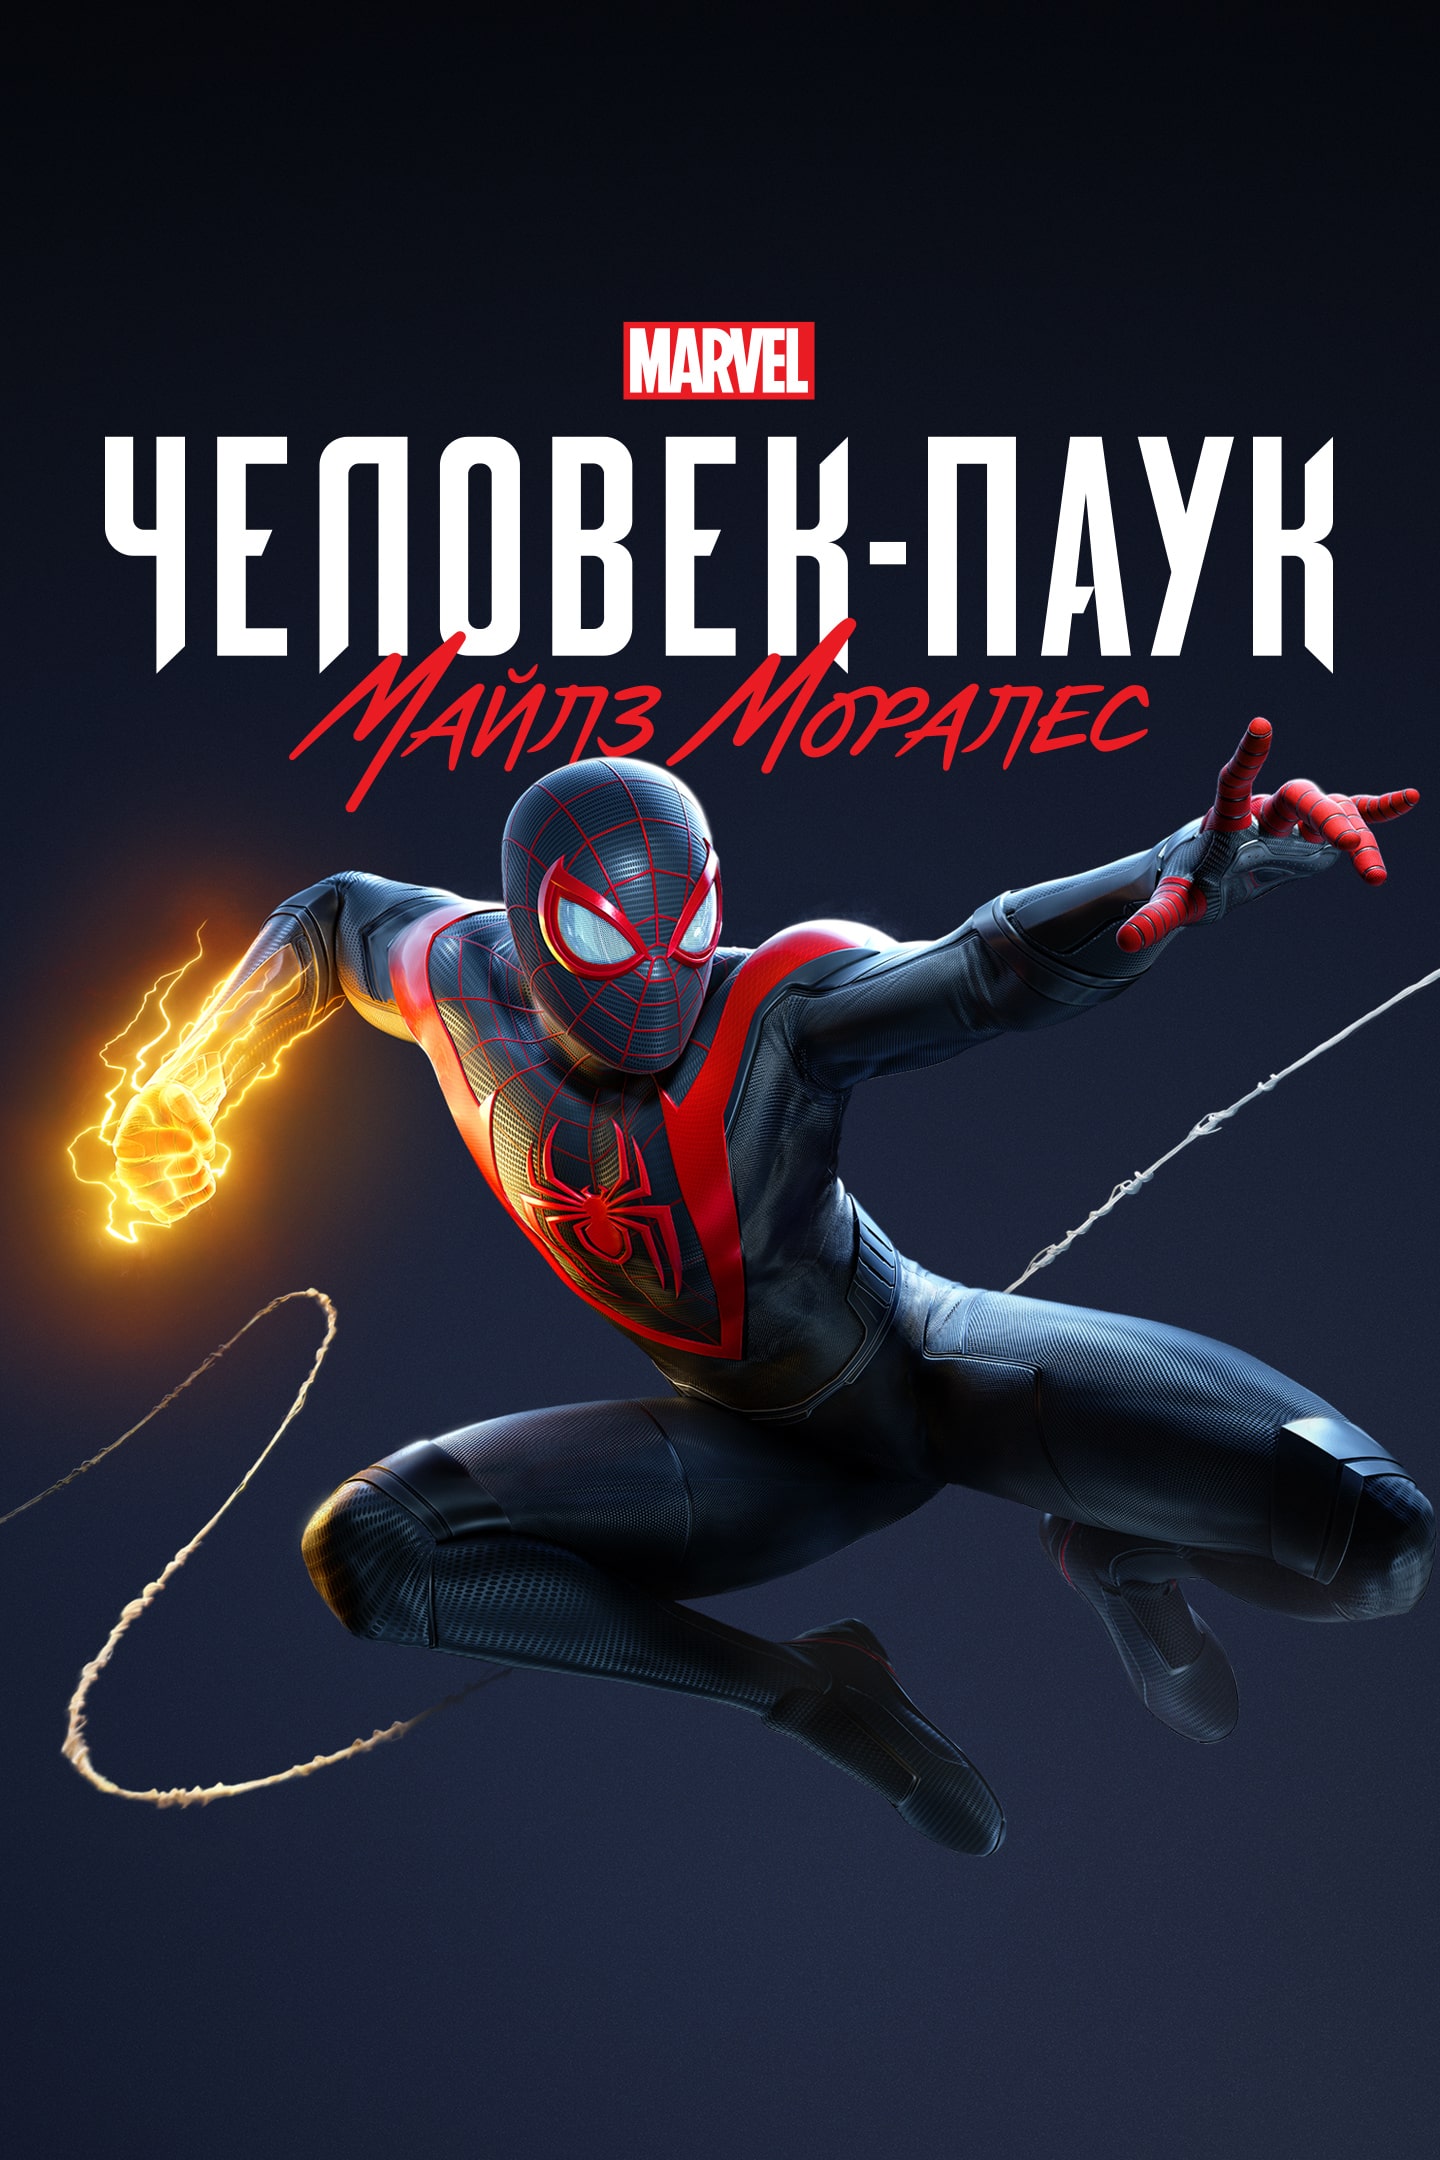 Marvel Spider-Man 2, PlayStation 5 - Игра